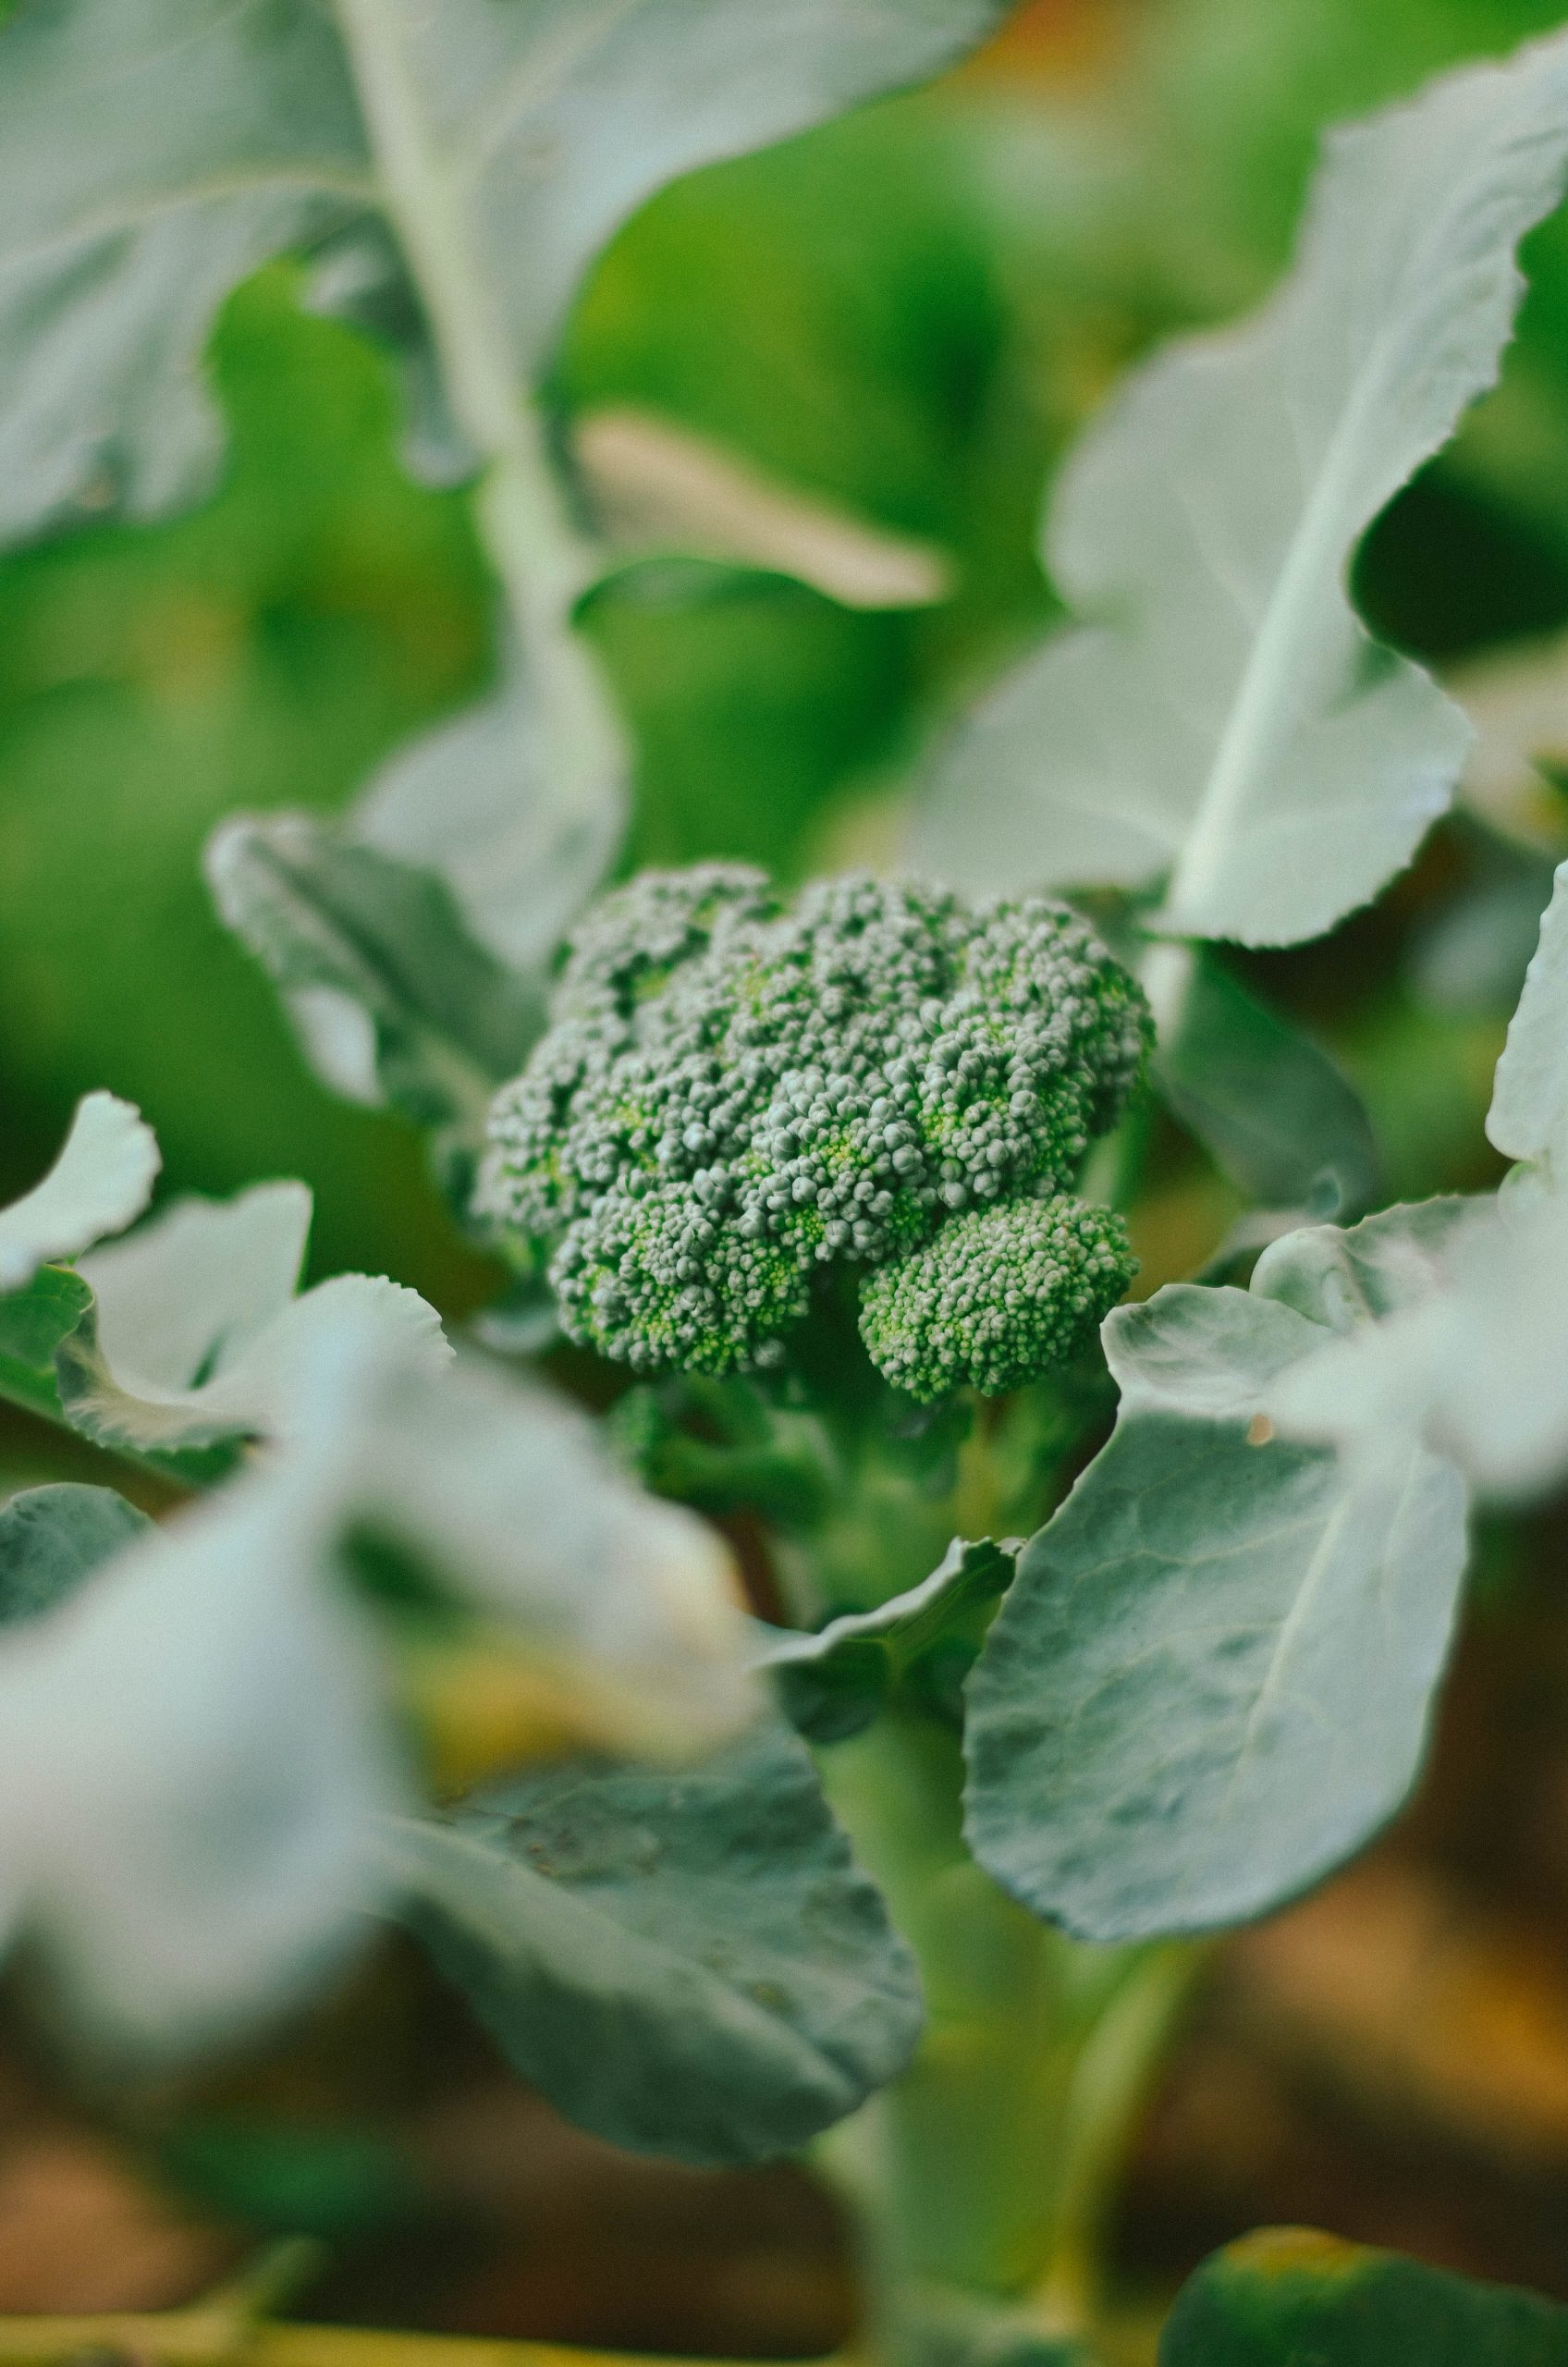 Where Does Broccoli Grow?